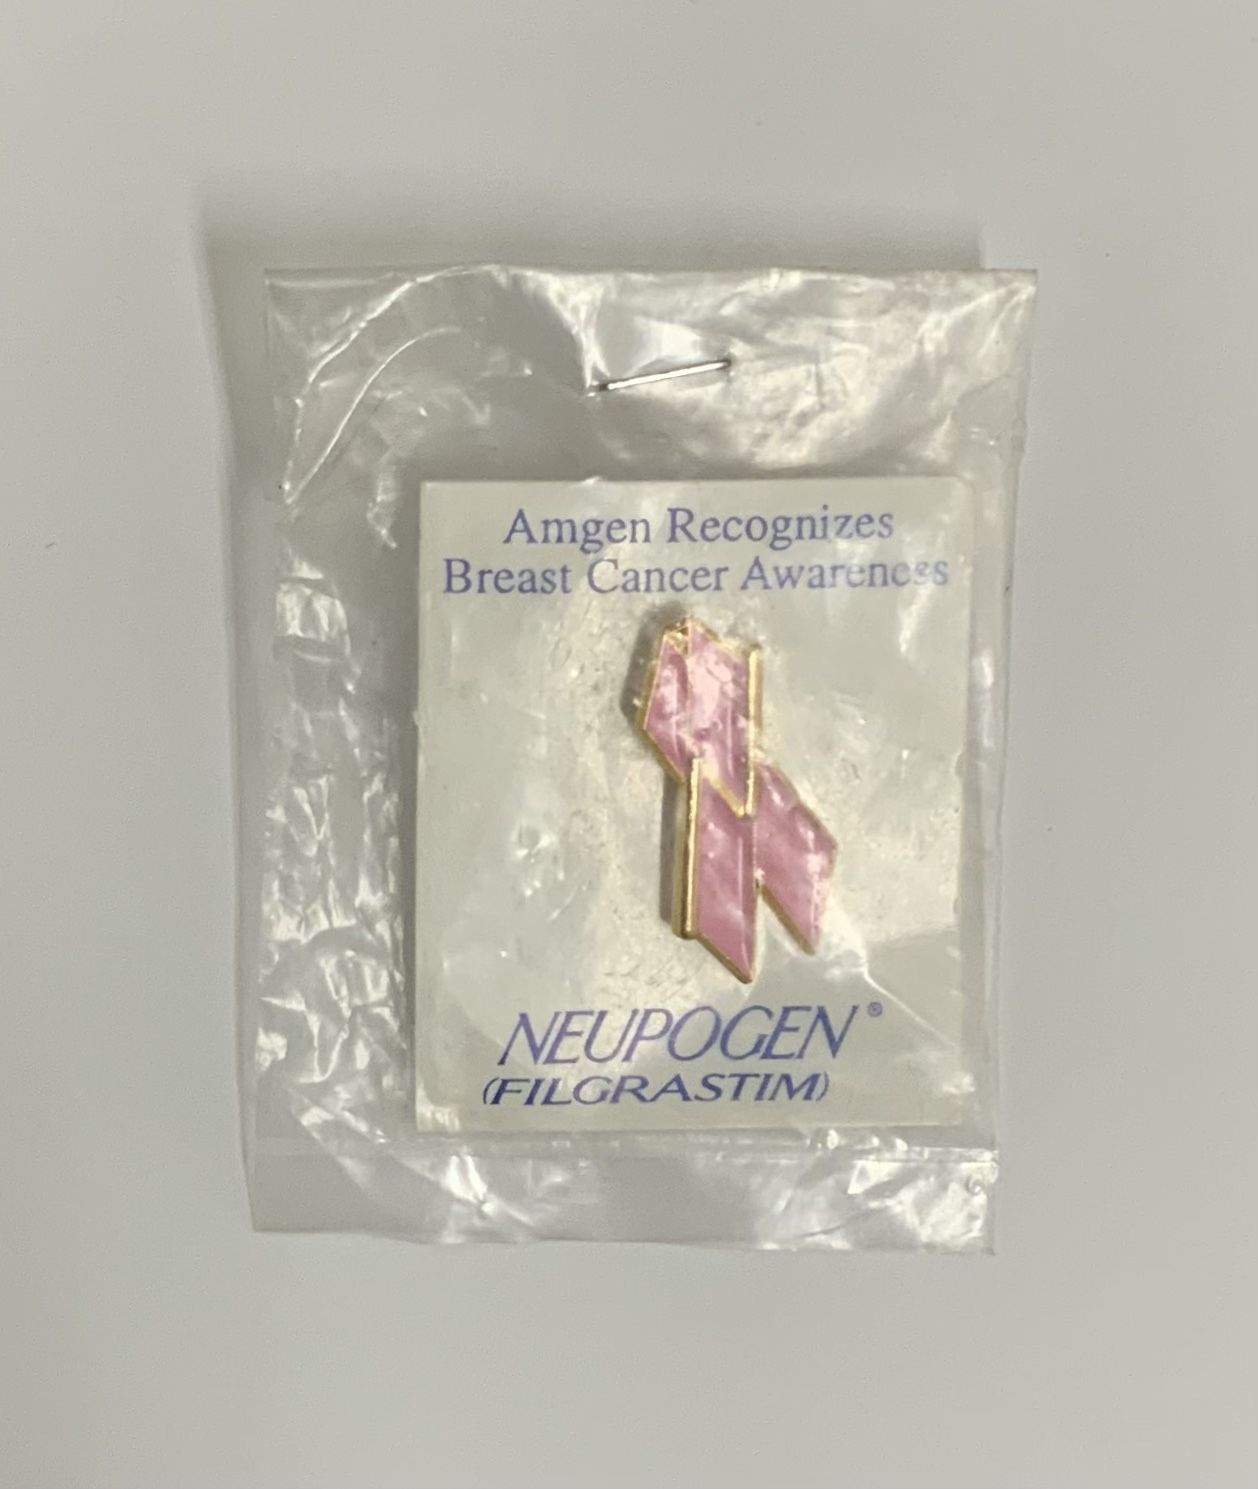 Neupogen Filgrastim Amgen Recognizes Breast Cancer Awareness Enamel Pin